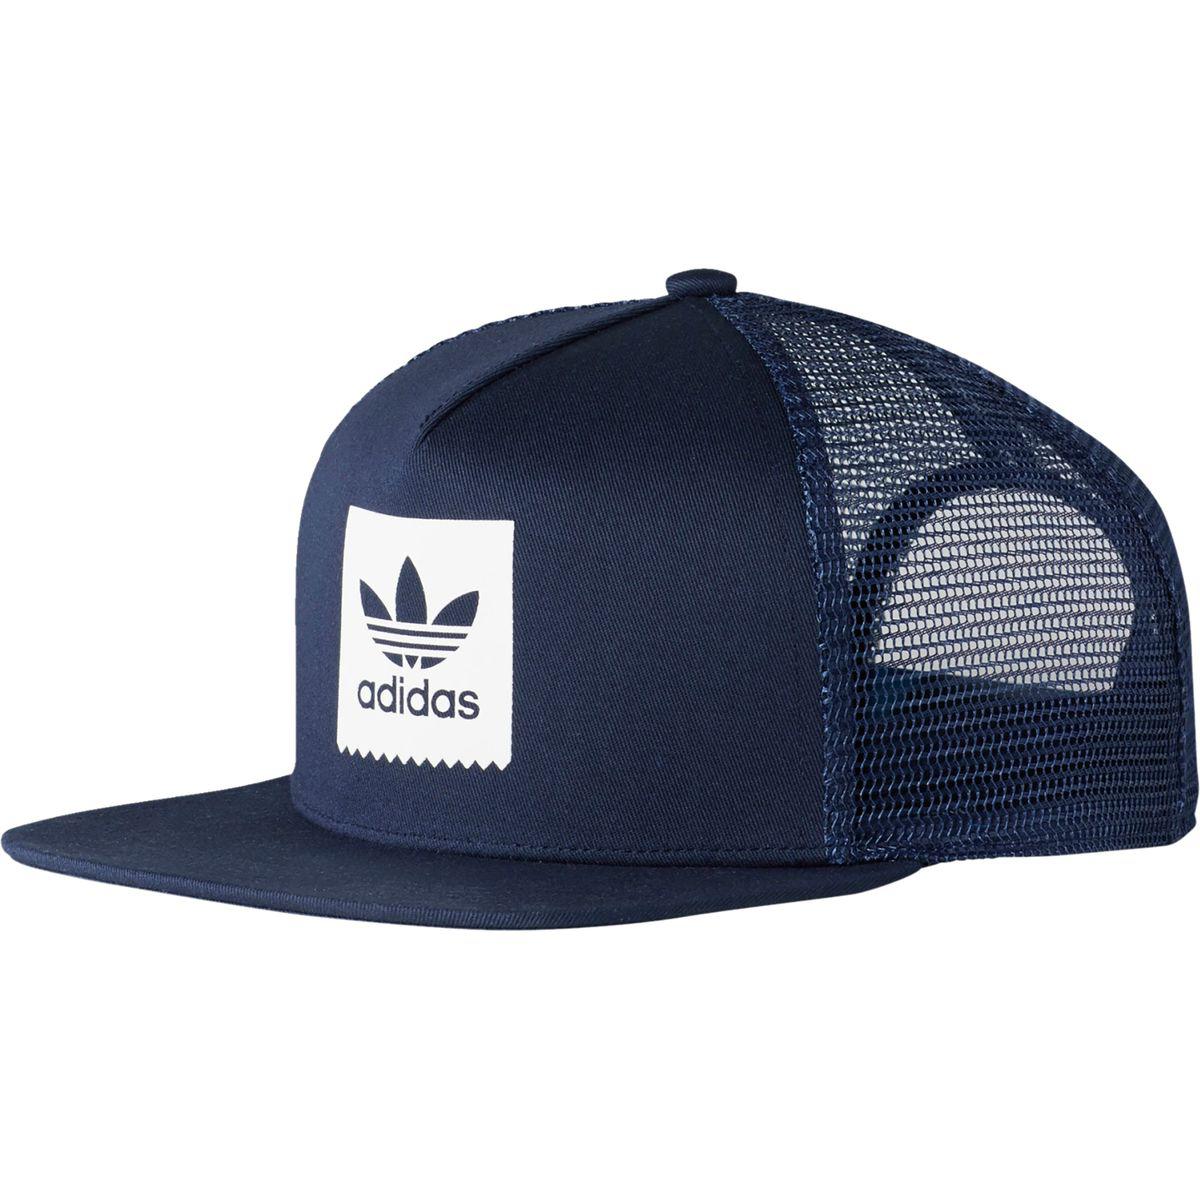 adidas Synthetic Trefoil Trucker Hat in Blue for Men - Lyst